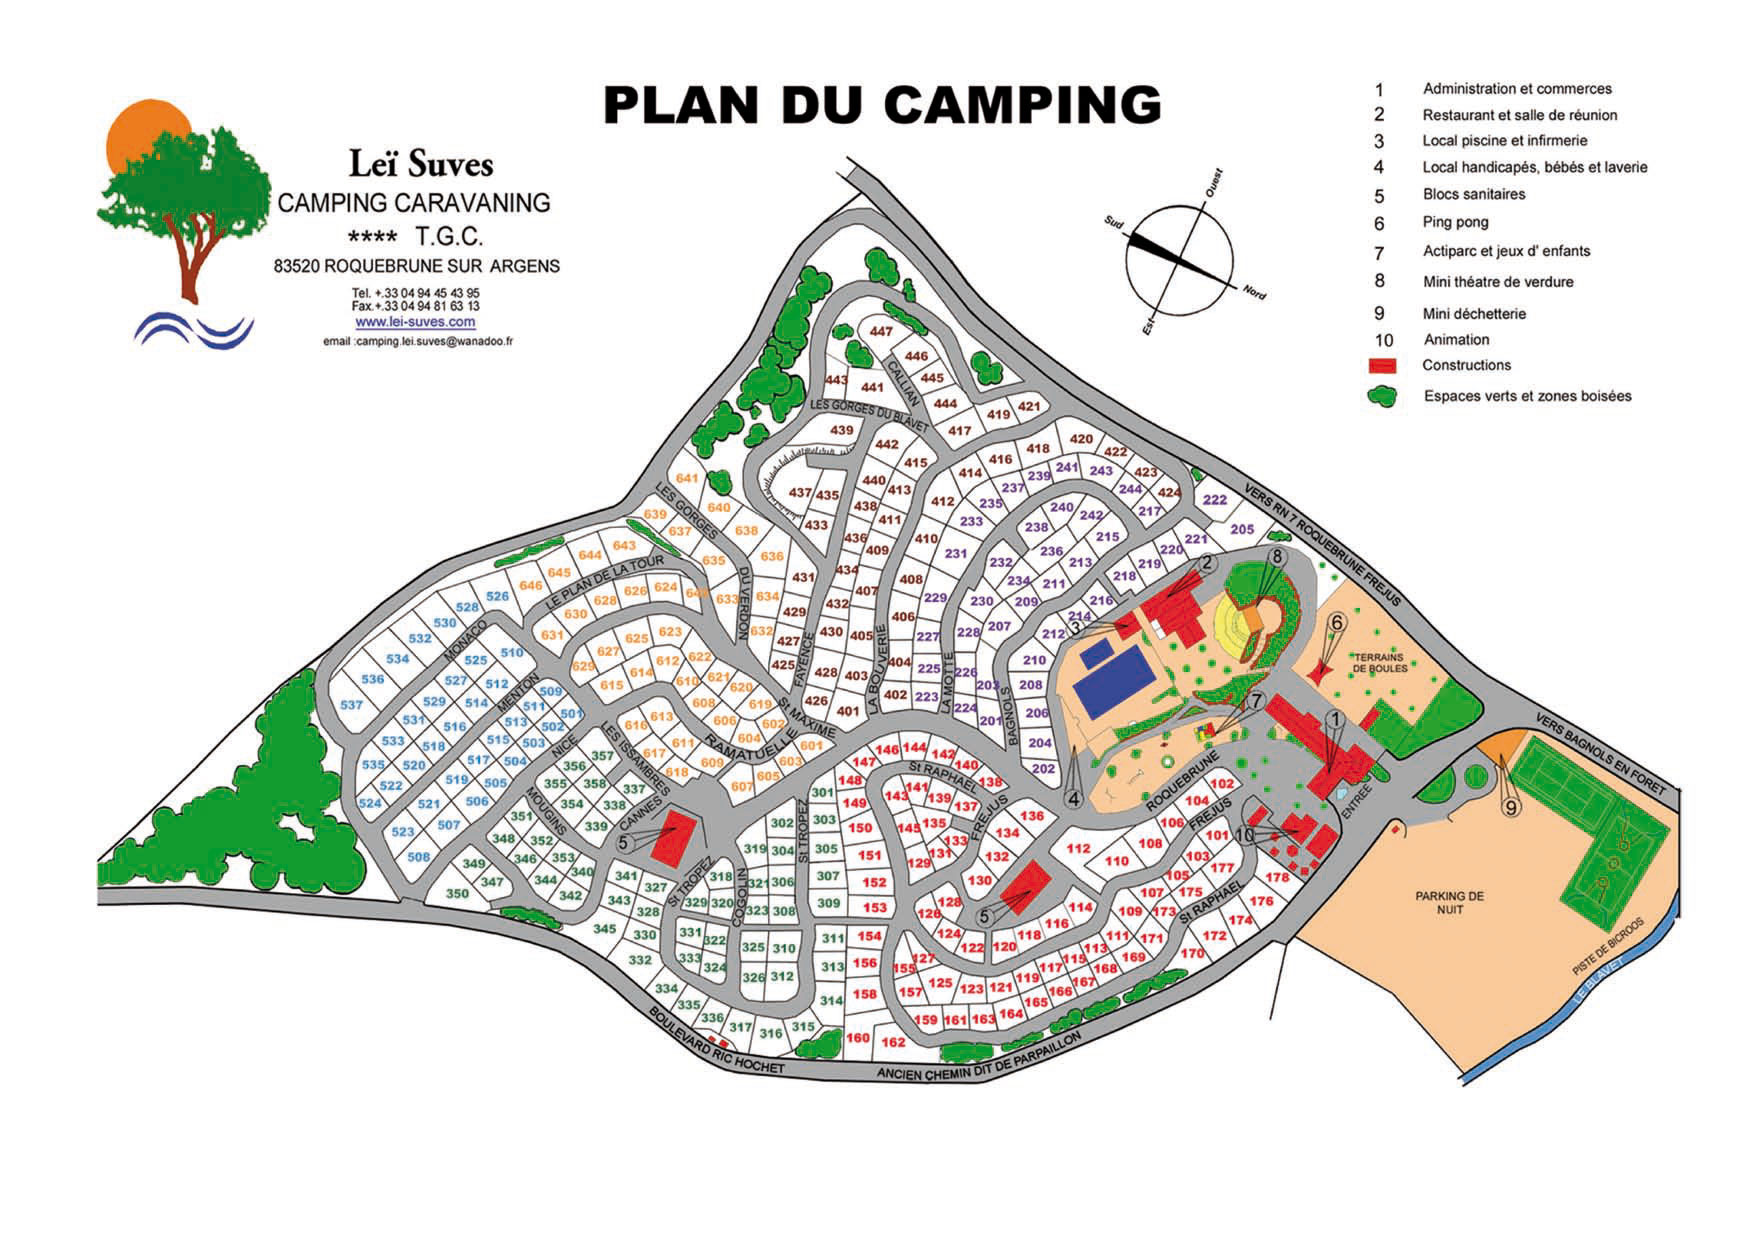 Campsite map Leï Suves